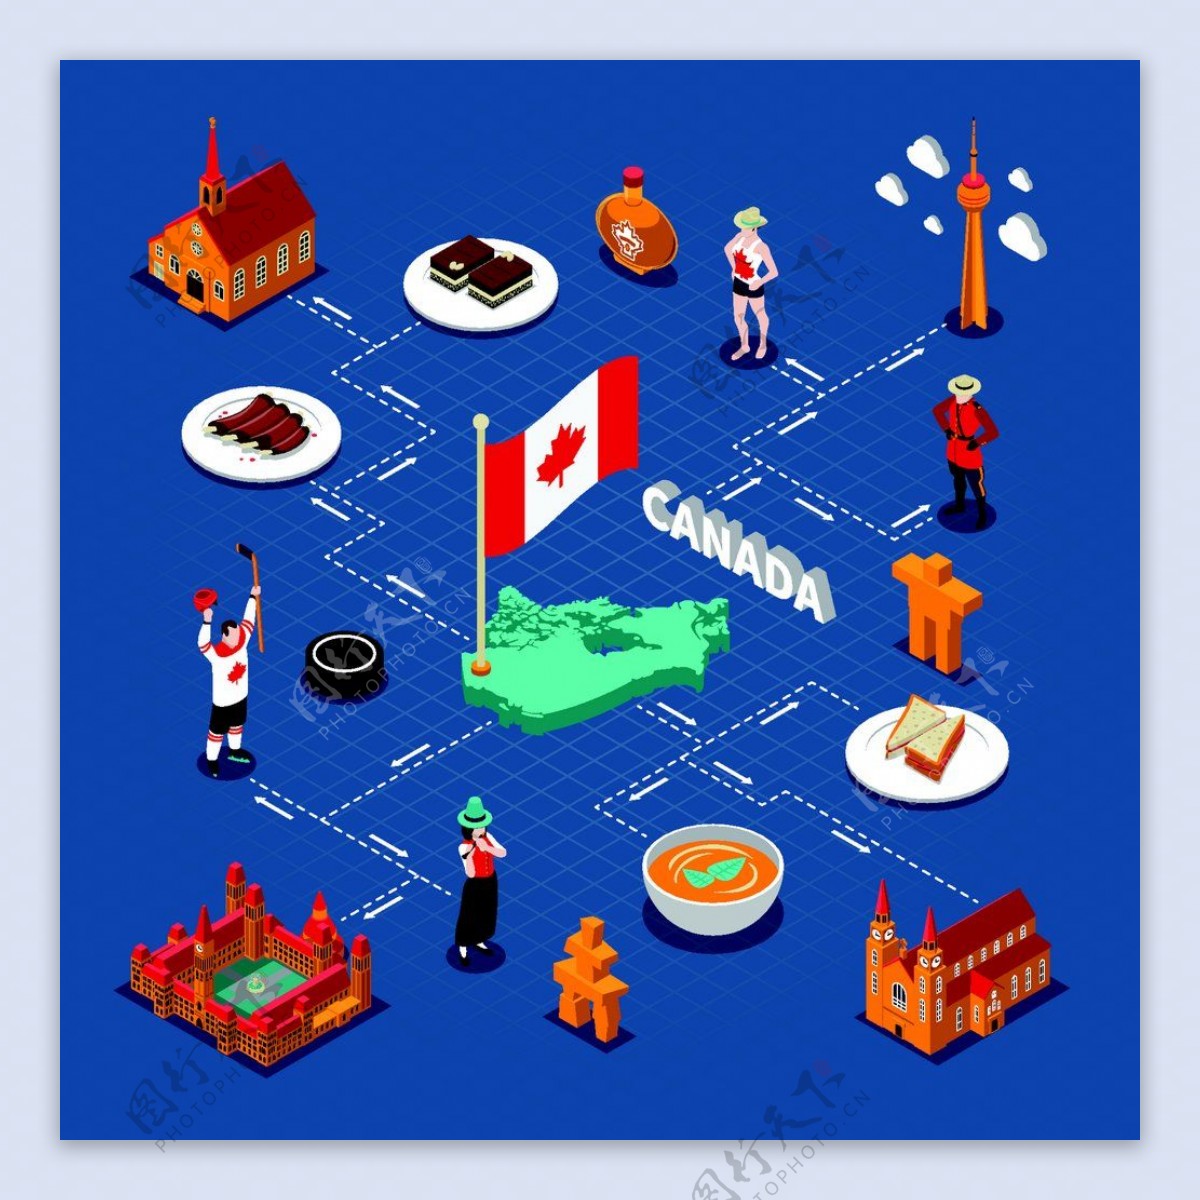 加拿大食物人物特色设计图片